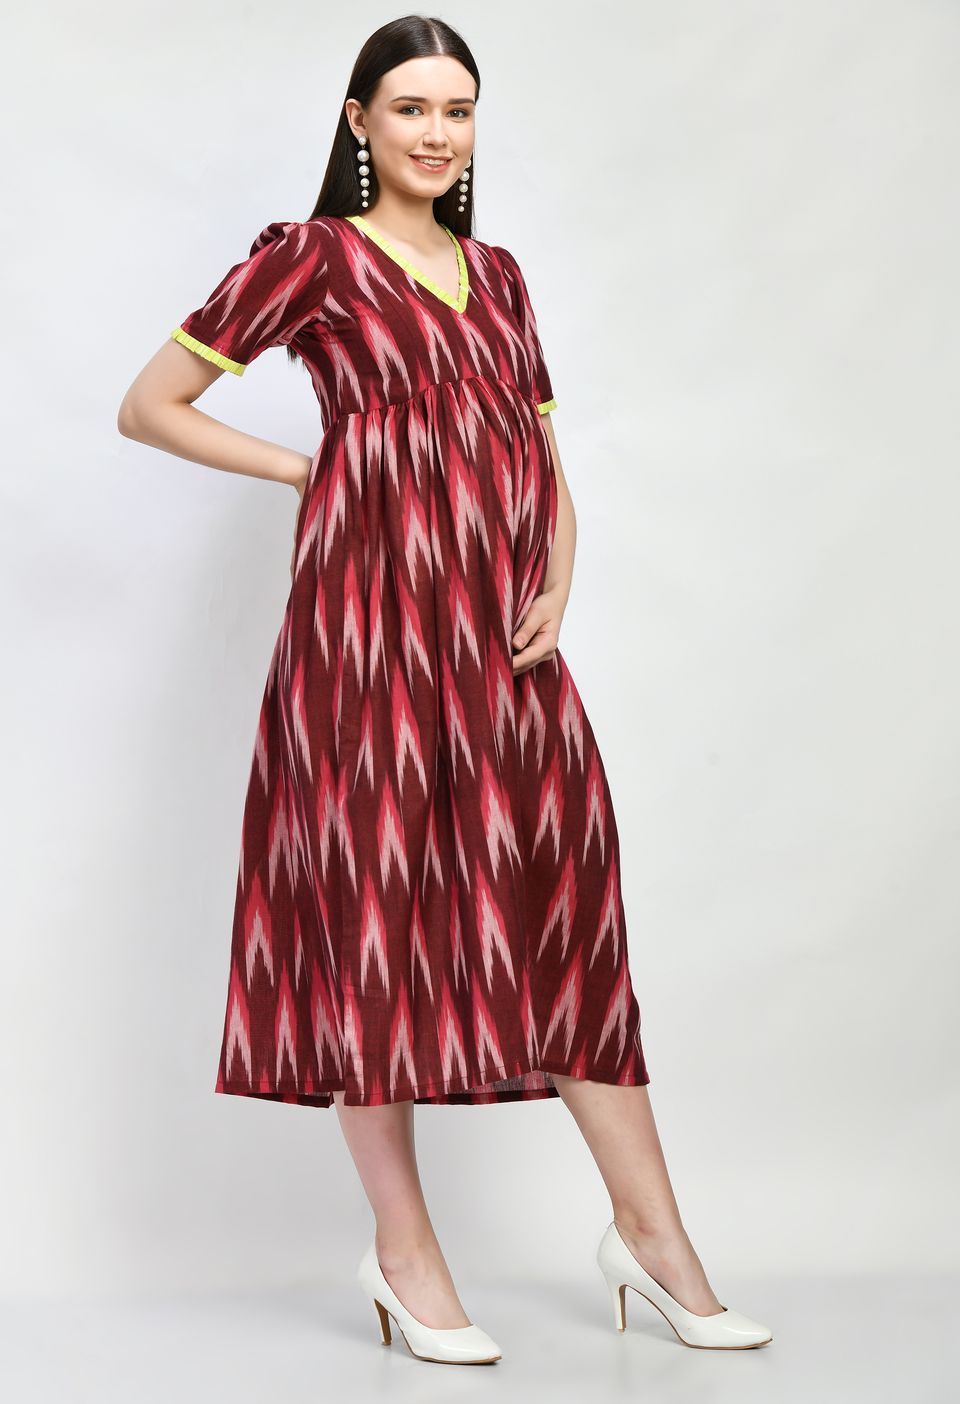 Mometernity Cotton Ikat Maternity & Nursing Midi Dress set of 1 Pcs - Maroon